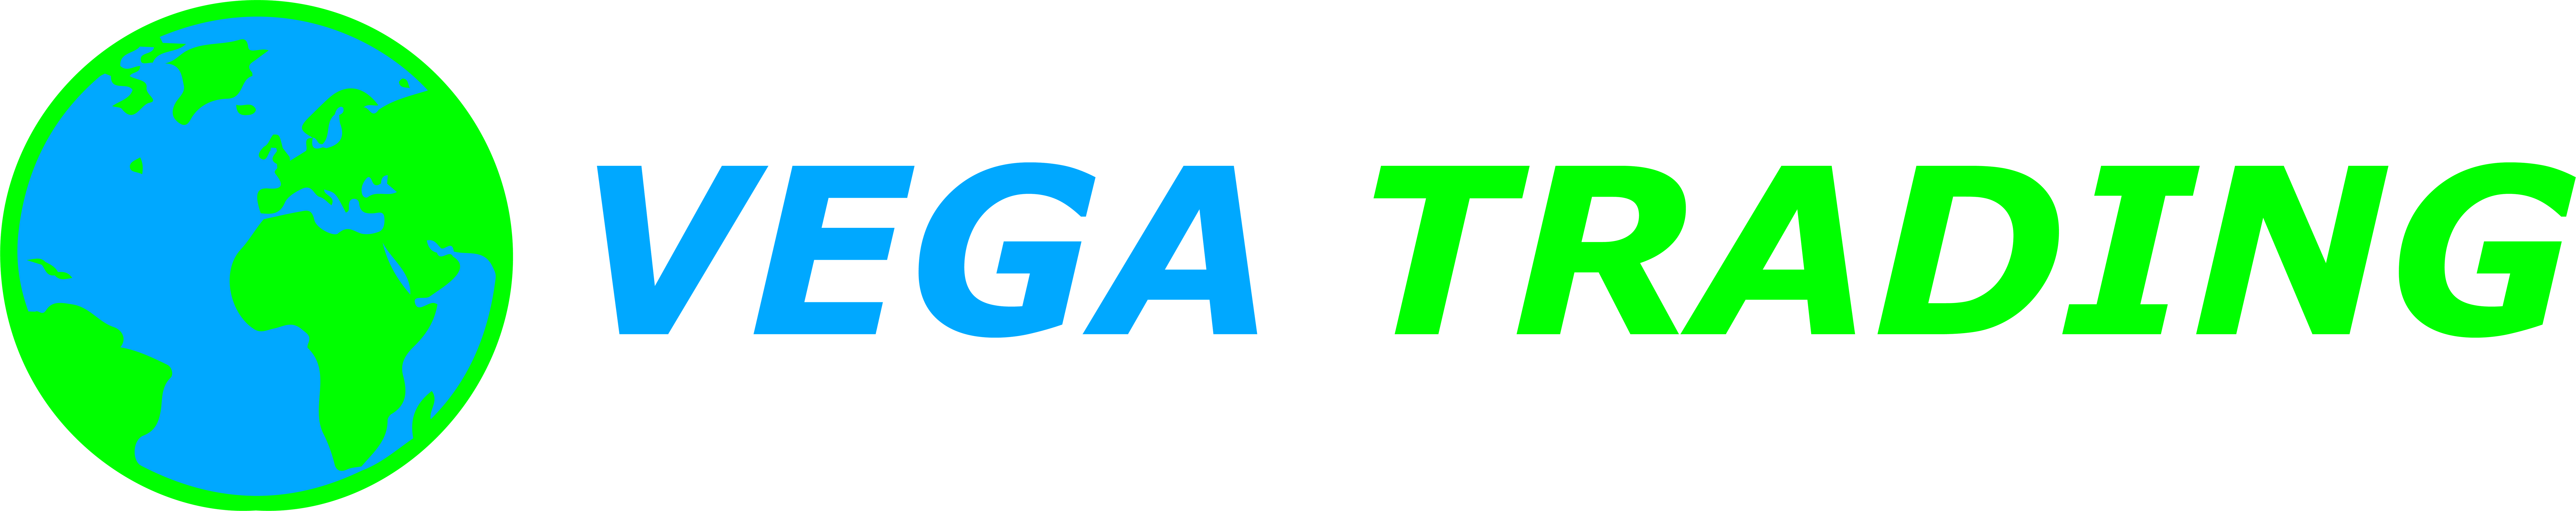 Vega Trading BV logo in color